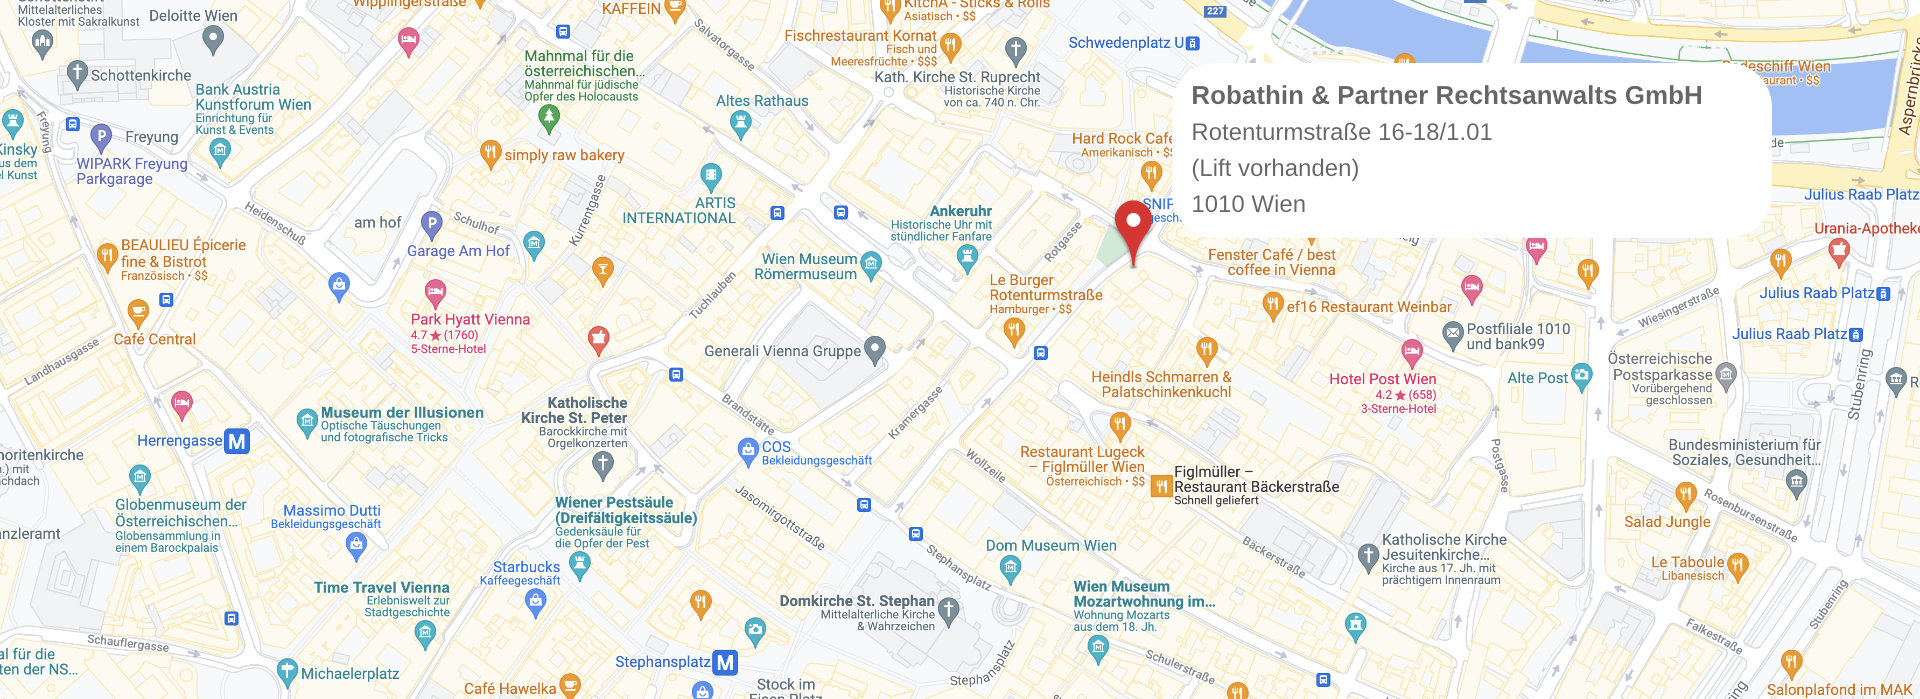 Karte zu Robathin Kanzlei Wien